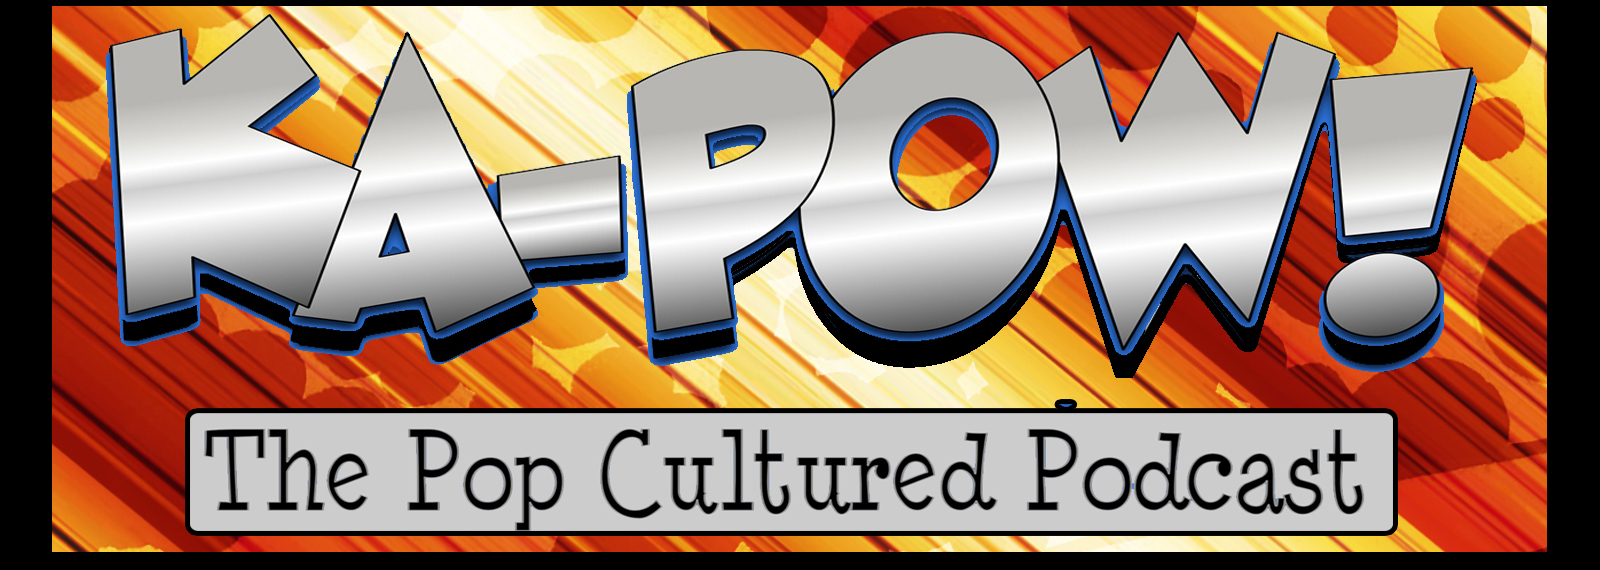 Ka-Pow the Pop Cultured Podcast #13